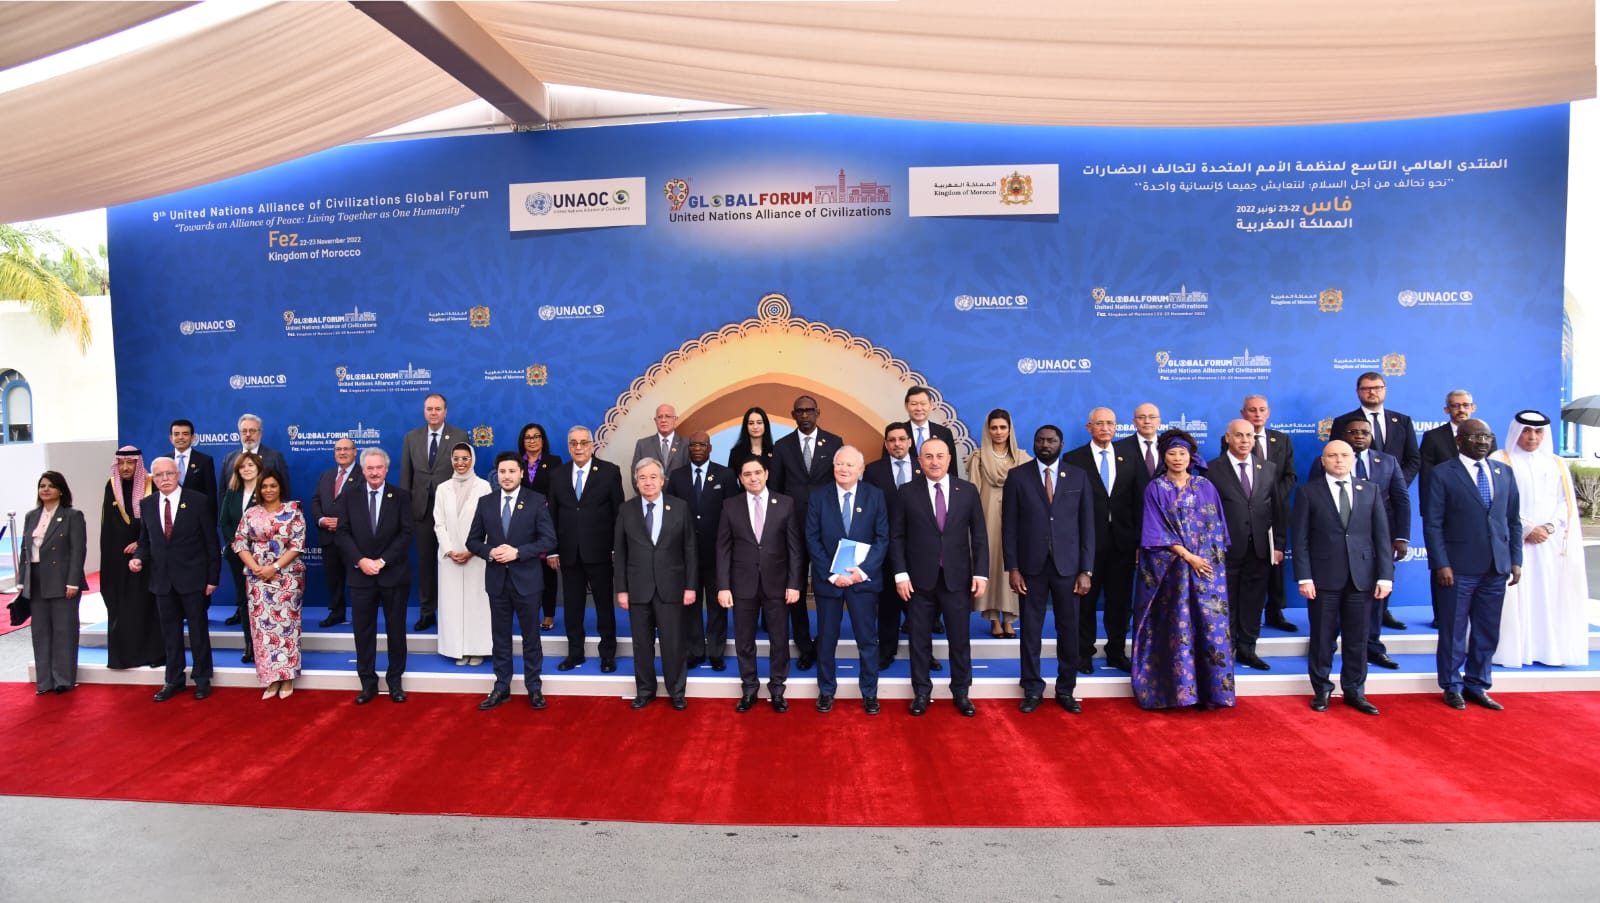 Maroc: Coup d’envoi du Forum mondial de l’Alliance des civilisations de l’ONU à Fès